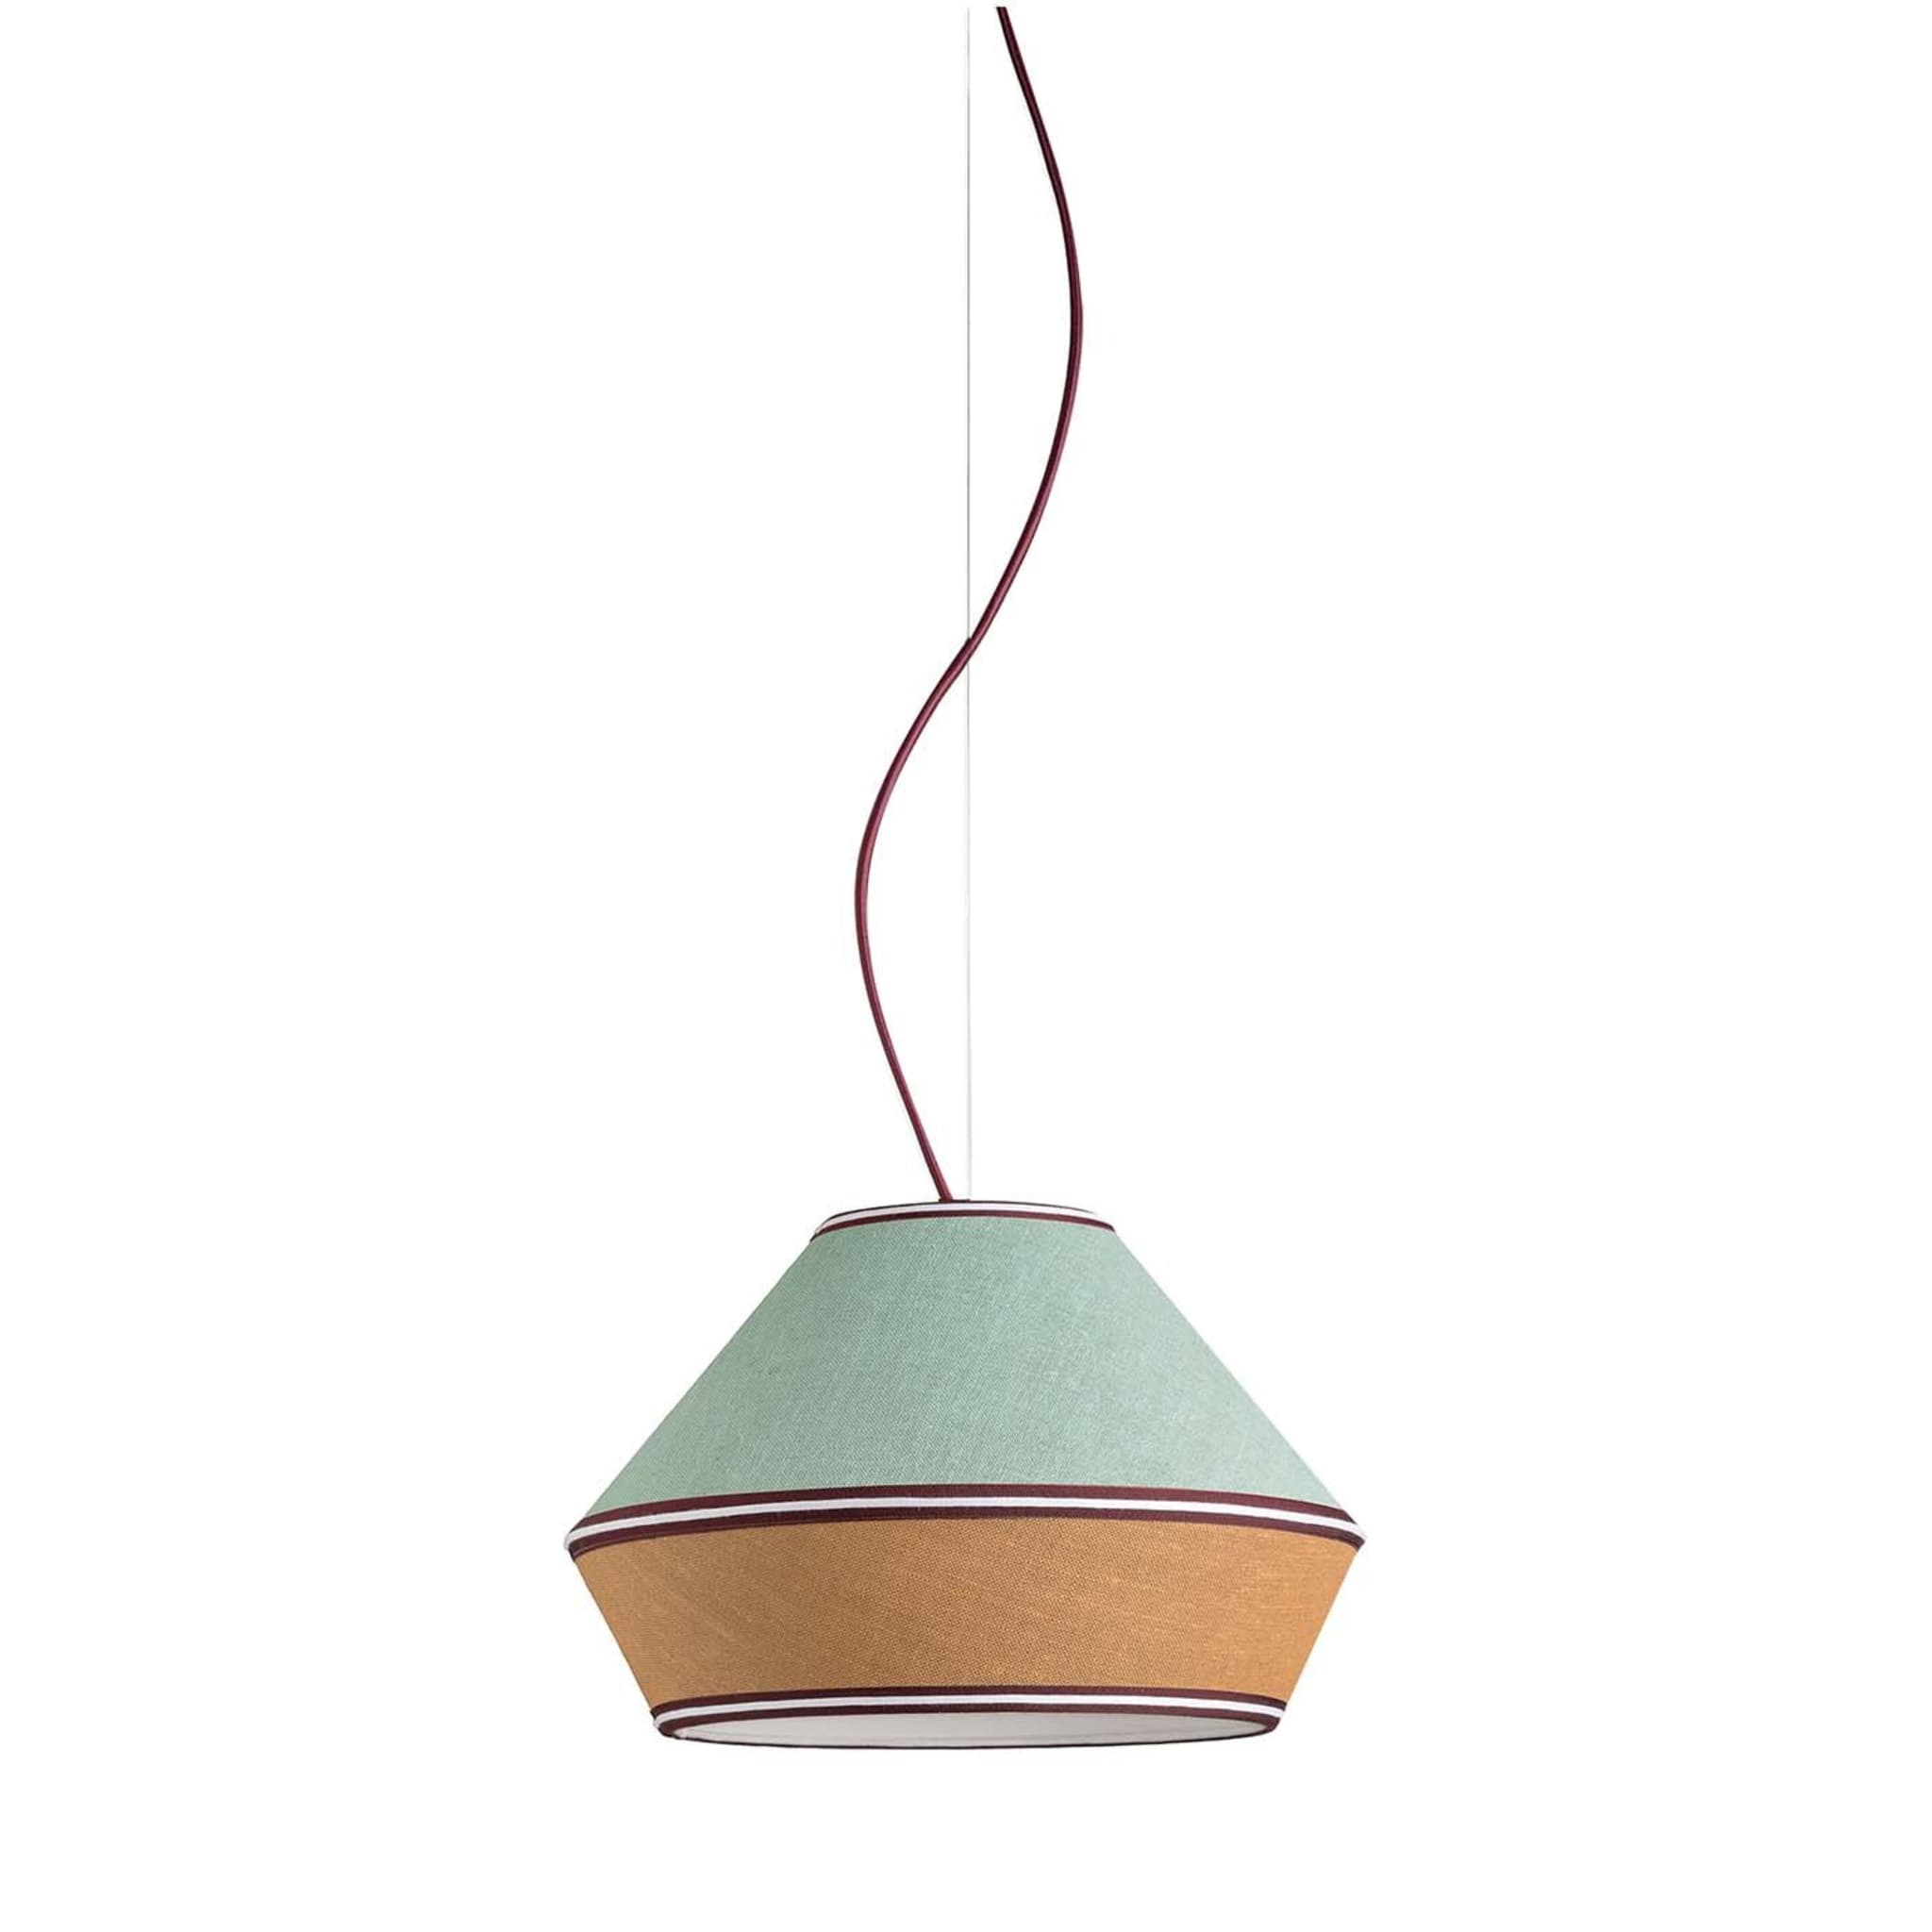 Meringa Pendant Lamp #2 35cm diameter - Main view